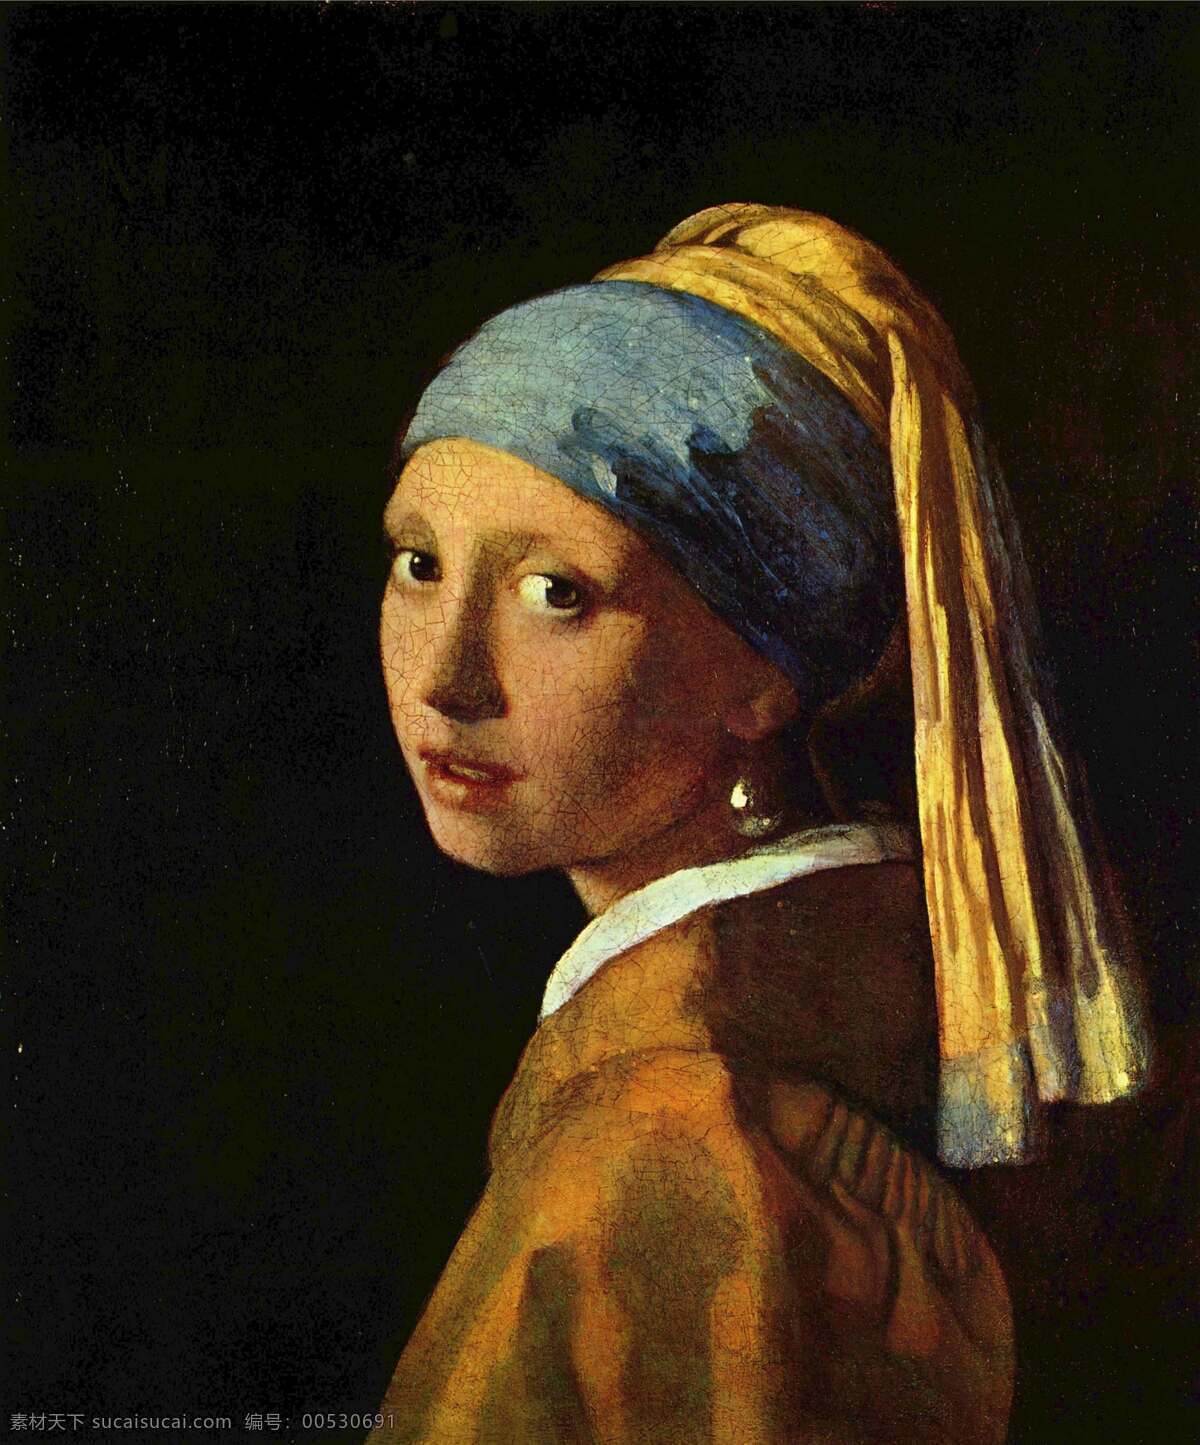 戴耳坠的女孩 杨183 维美尔 油画 世界名画 绘画书法 文化艺术